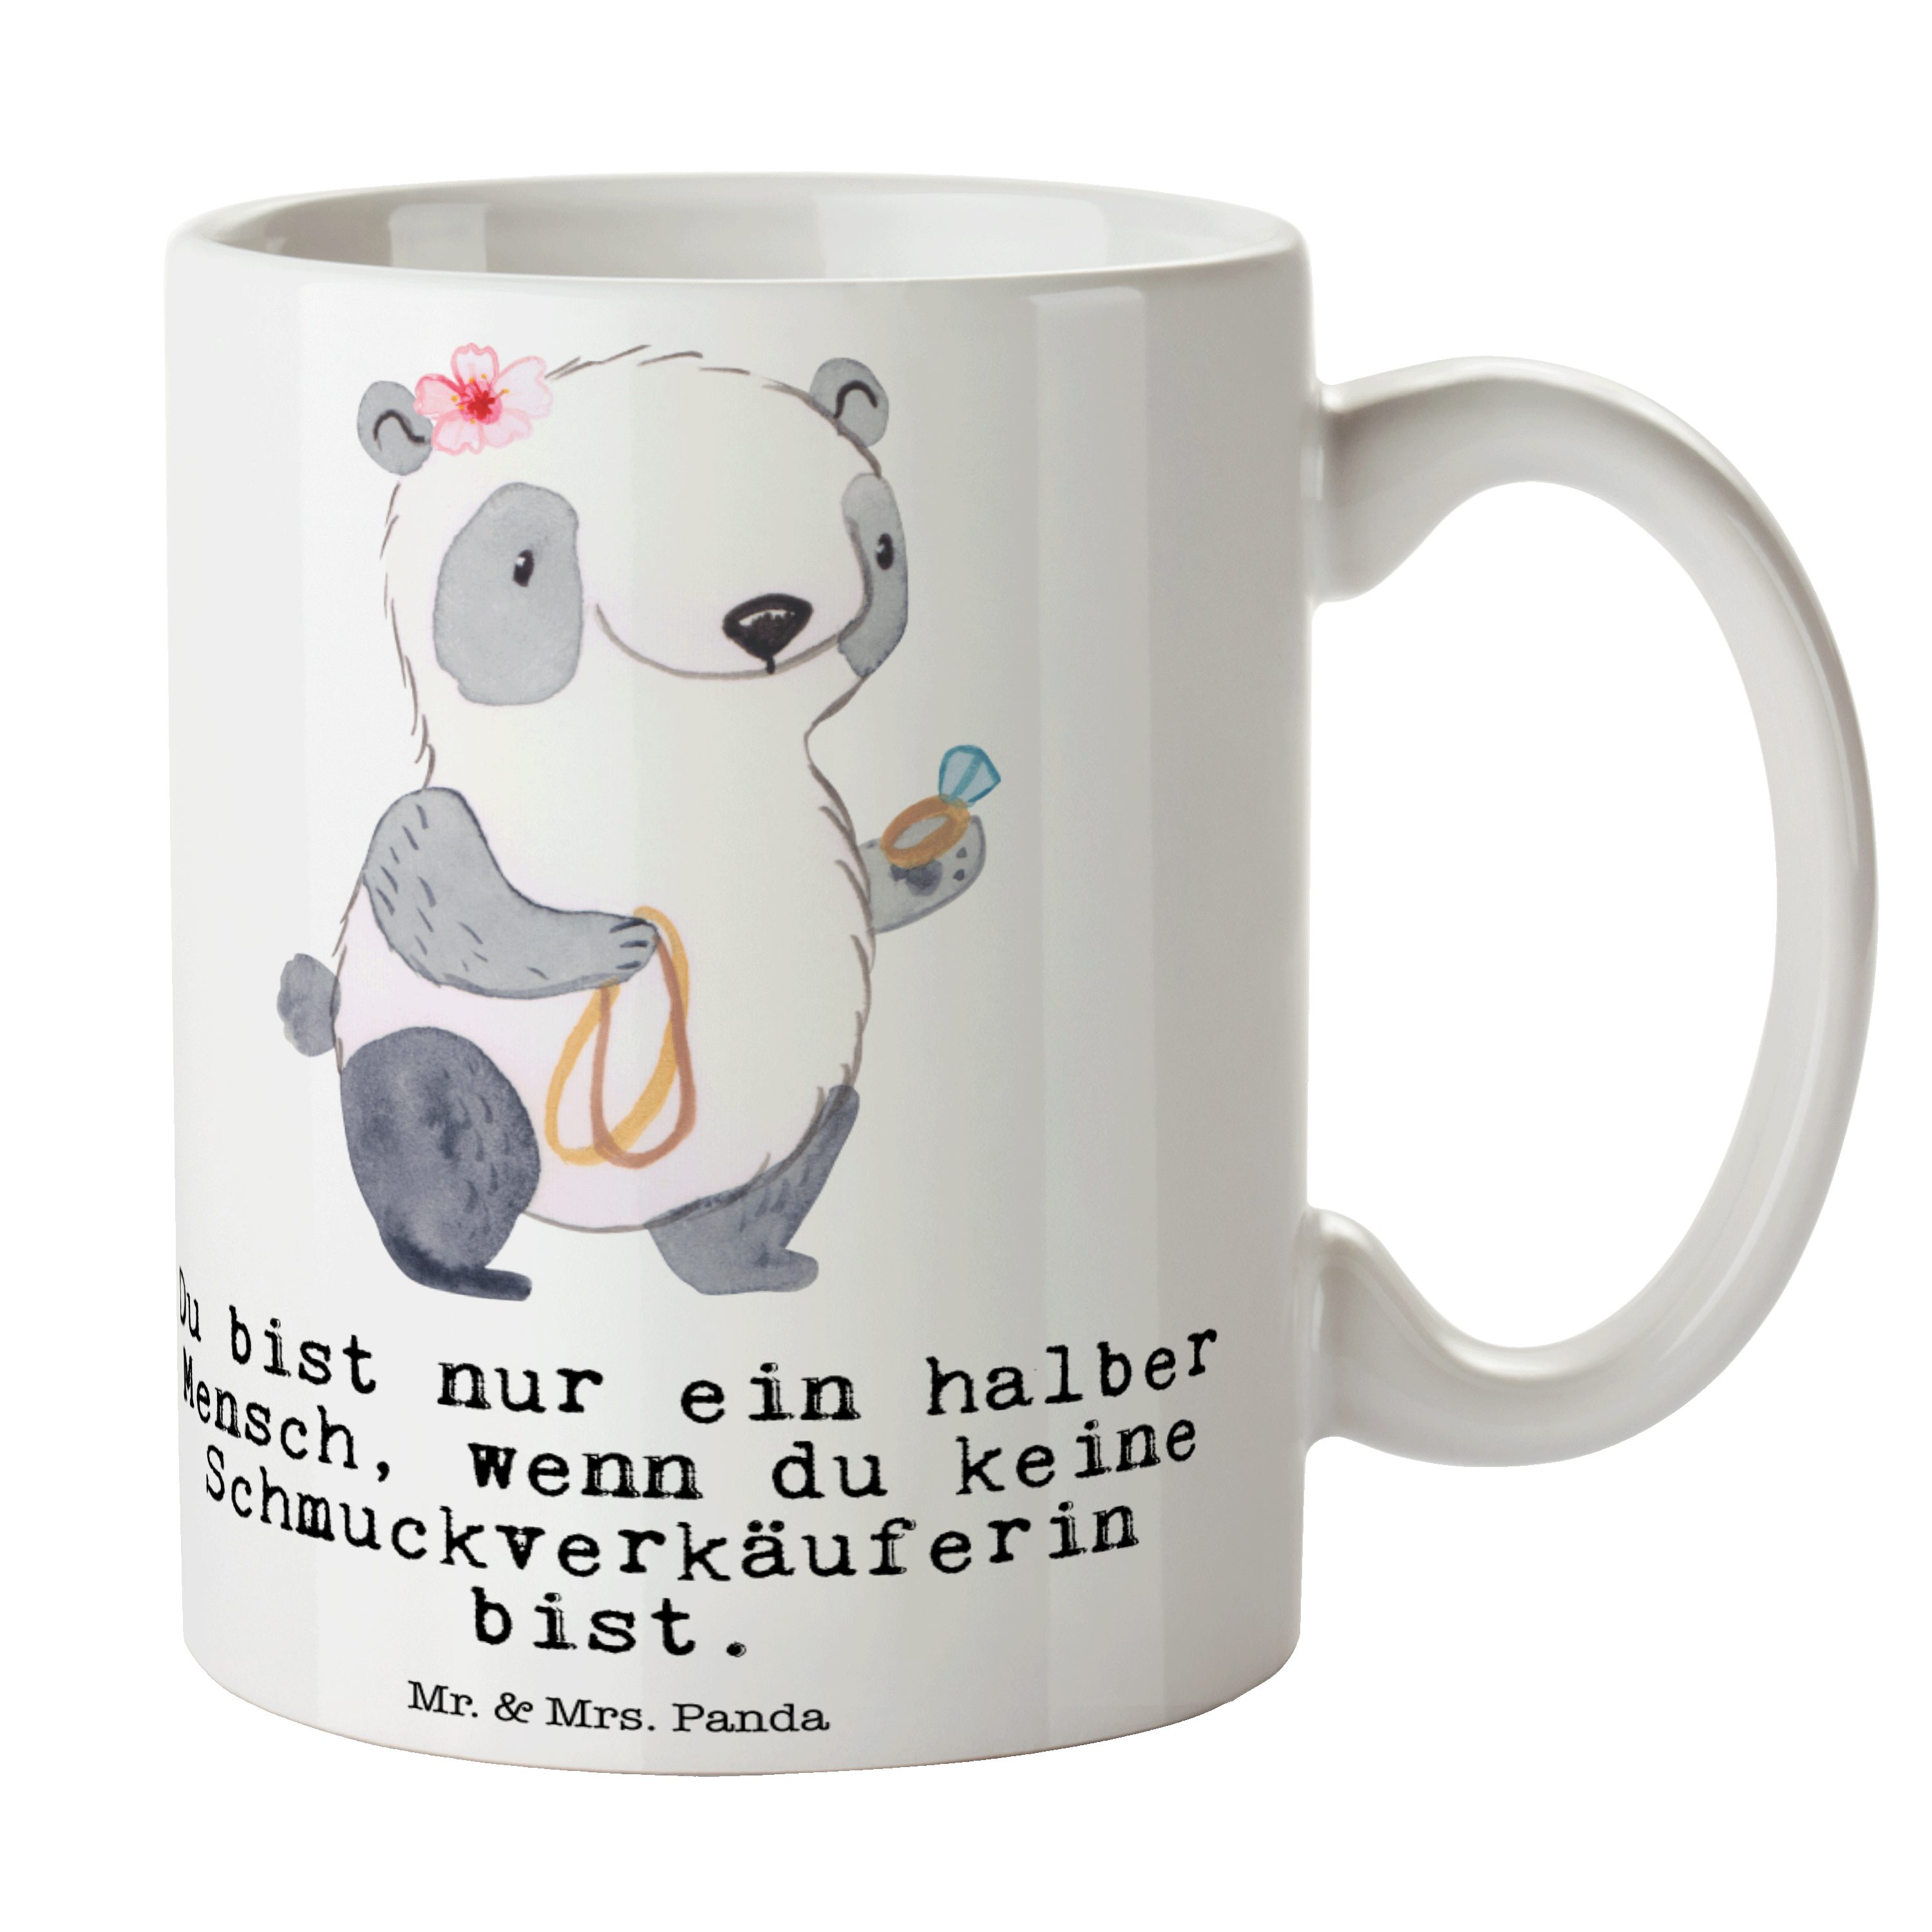 Mr. & Mrs. Panda Tasse Schmuckverkäuferin mit Herz - Weiß - Geschenk, Schmuckgeschäft, Keram, Keramik